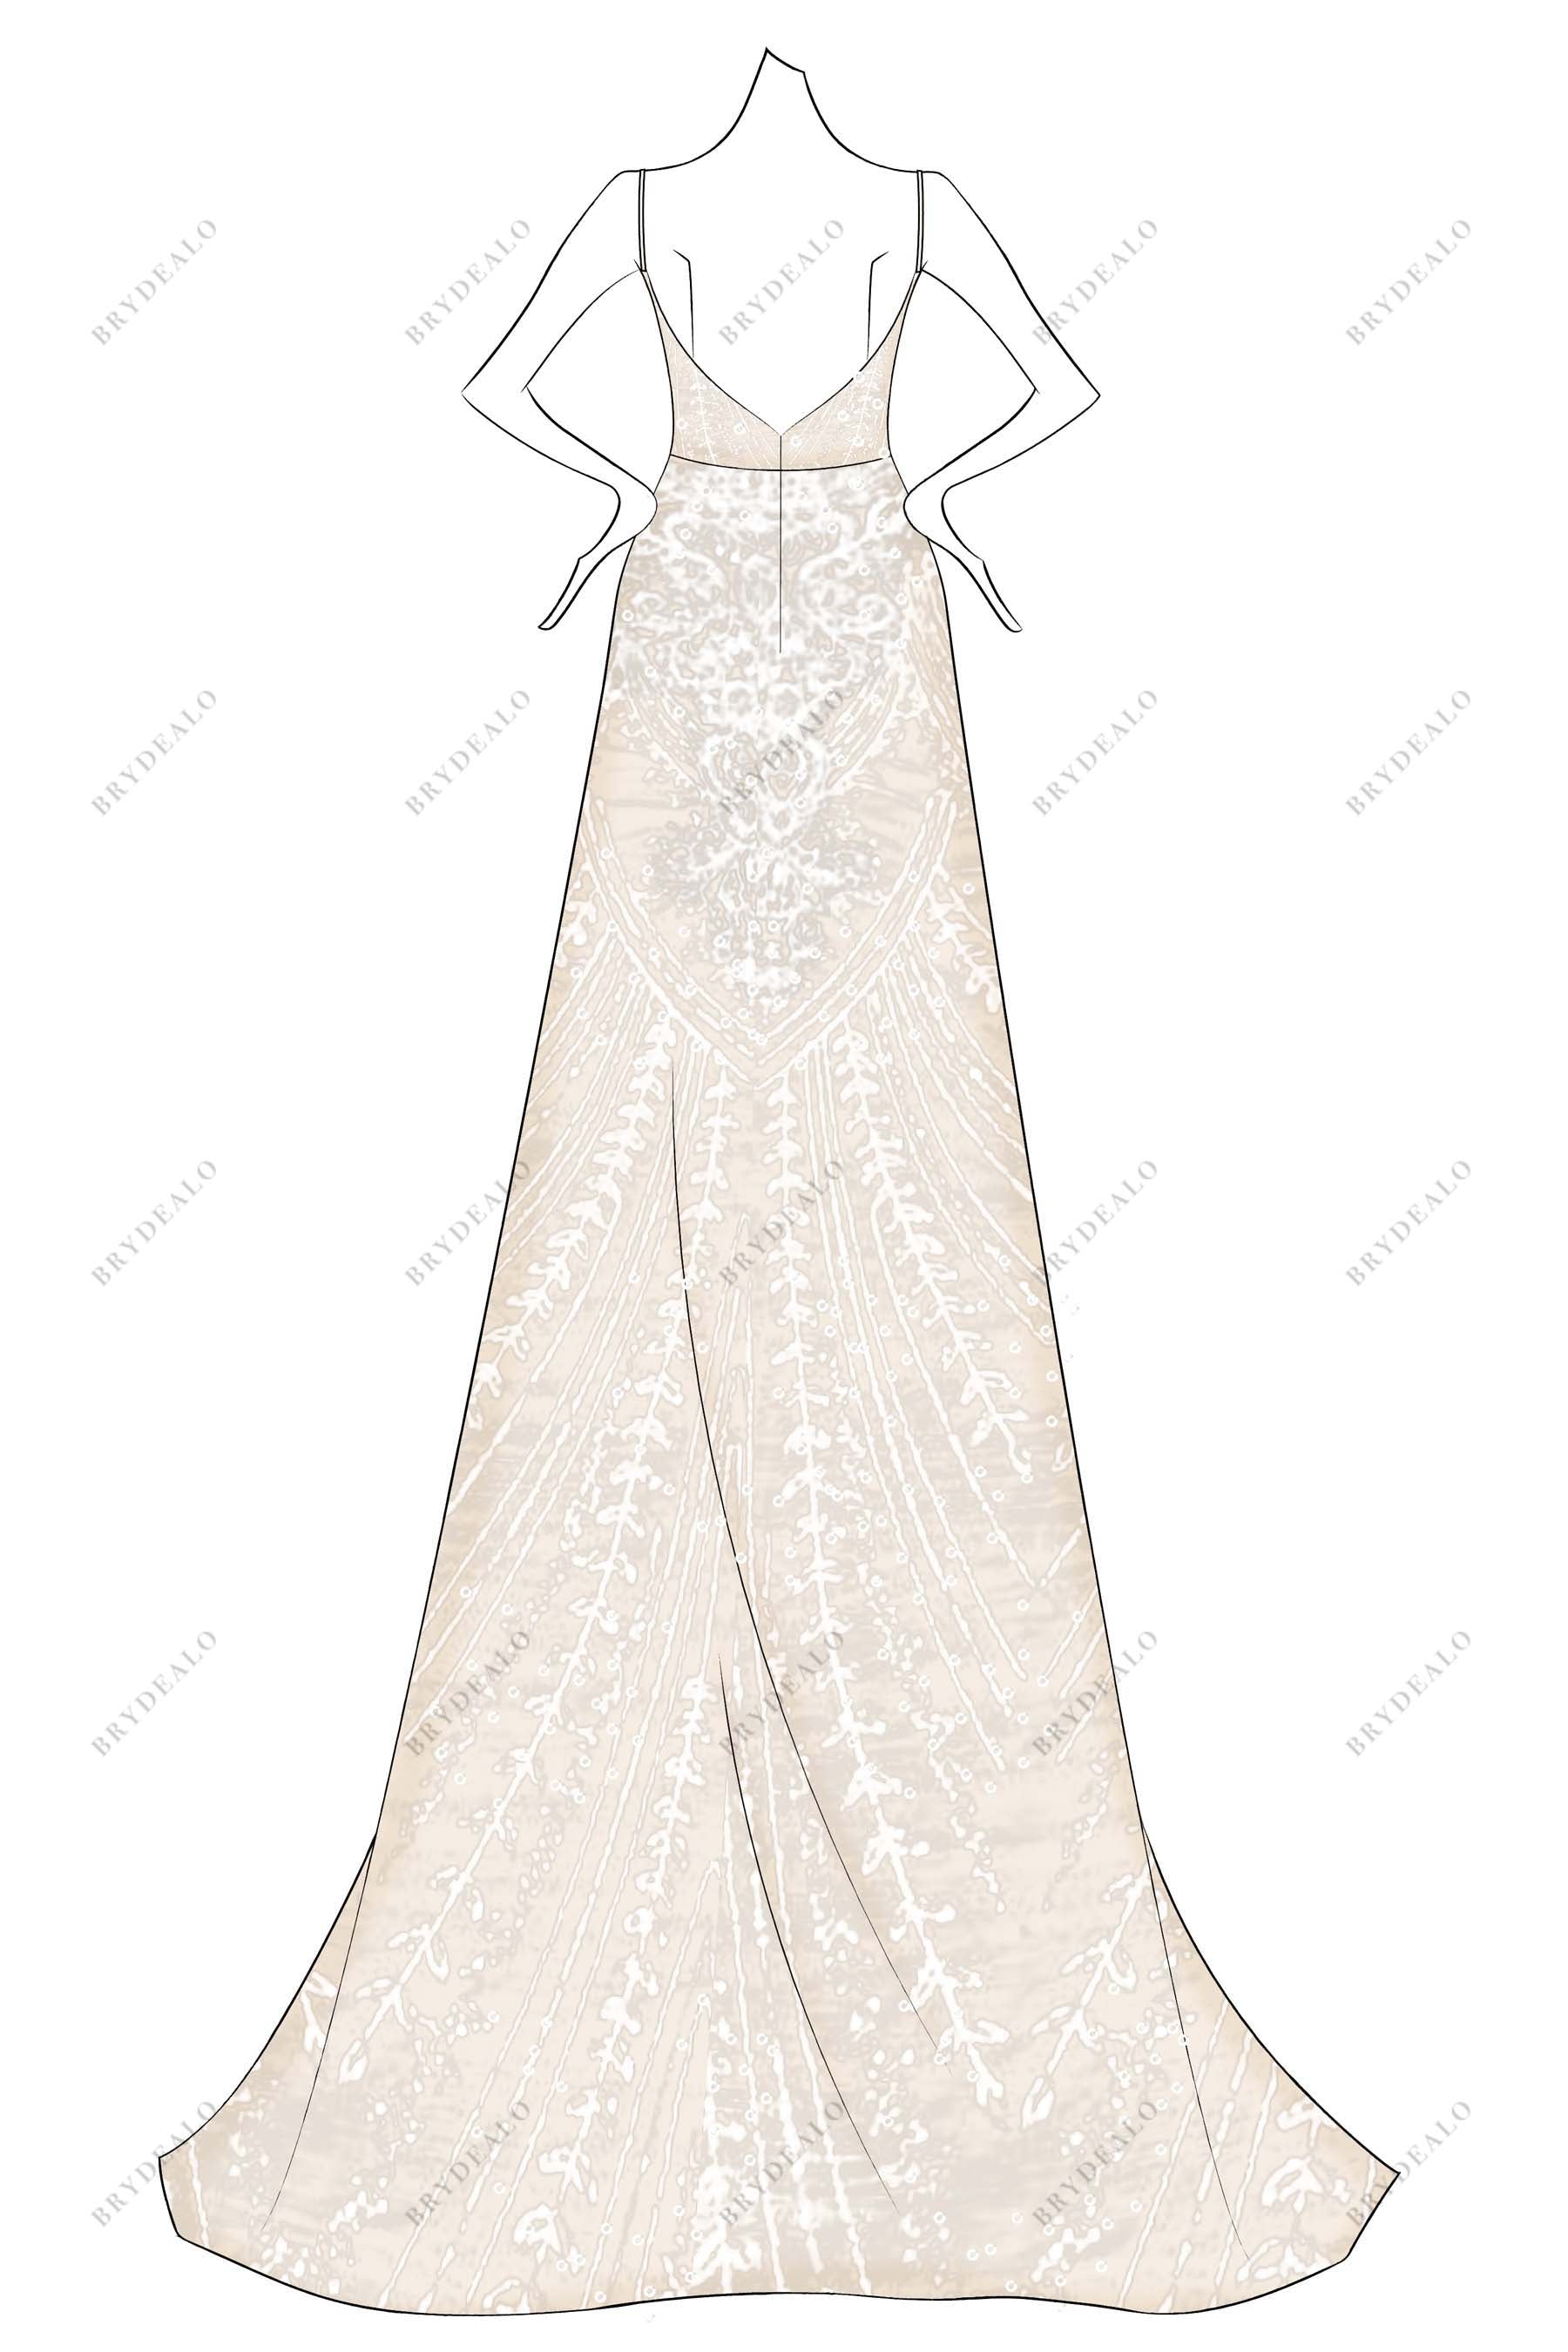 ivory lace overlaid oyster A-line designer weddin dress sketch